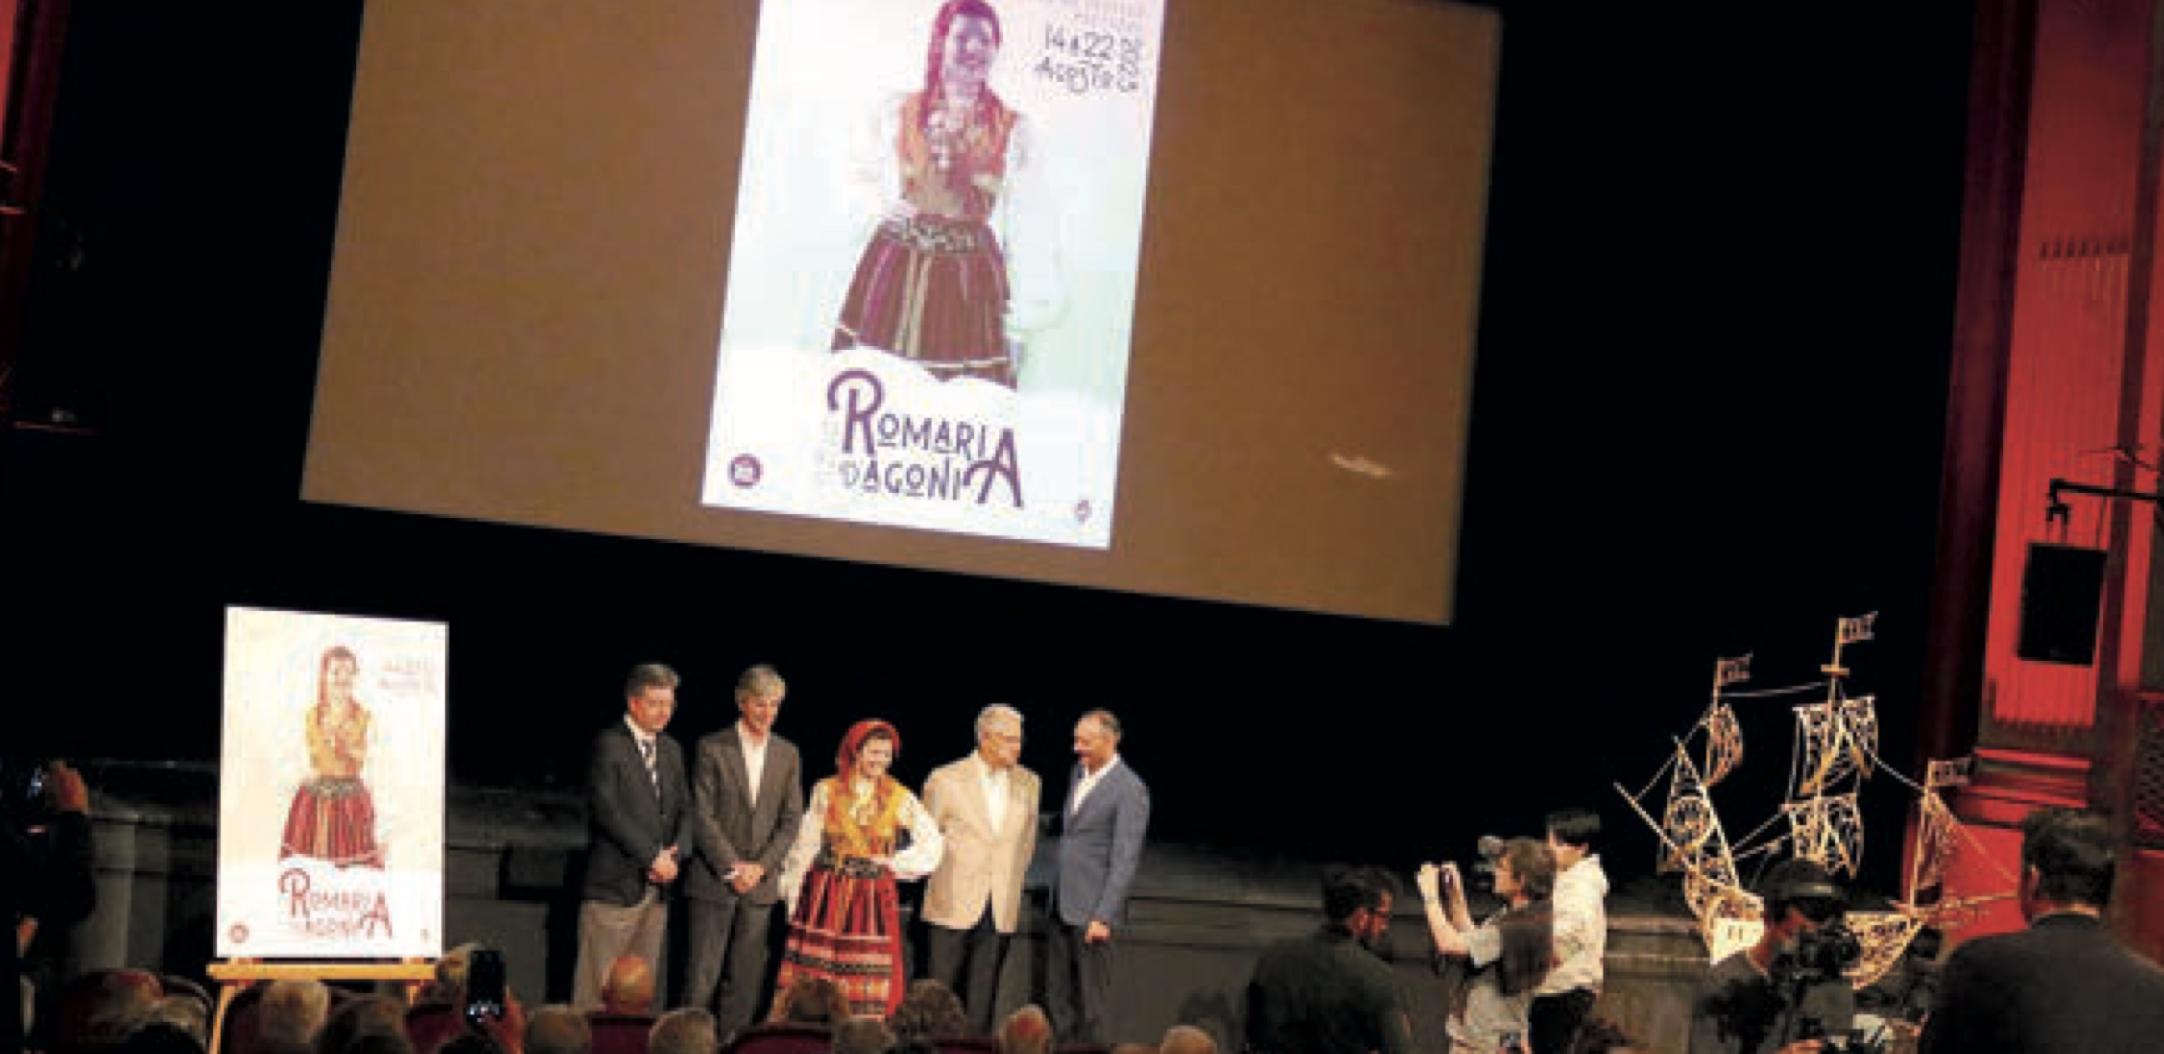 Romaria d’Agonia tem Ana num cartaz que honra história e devoção